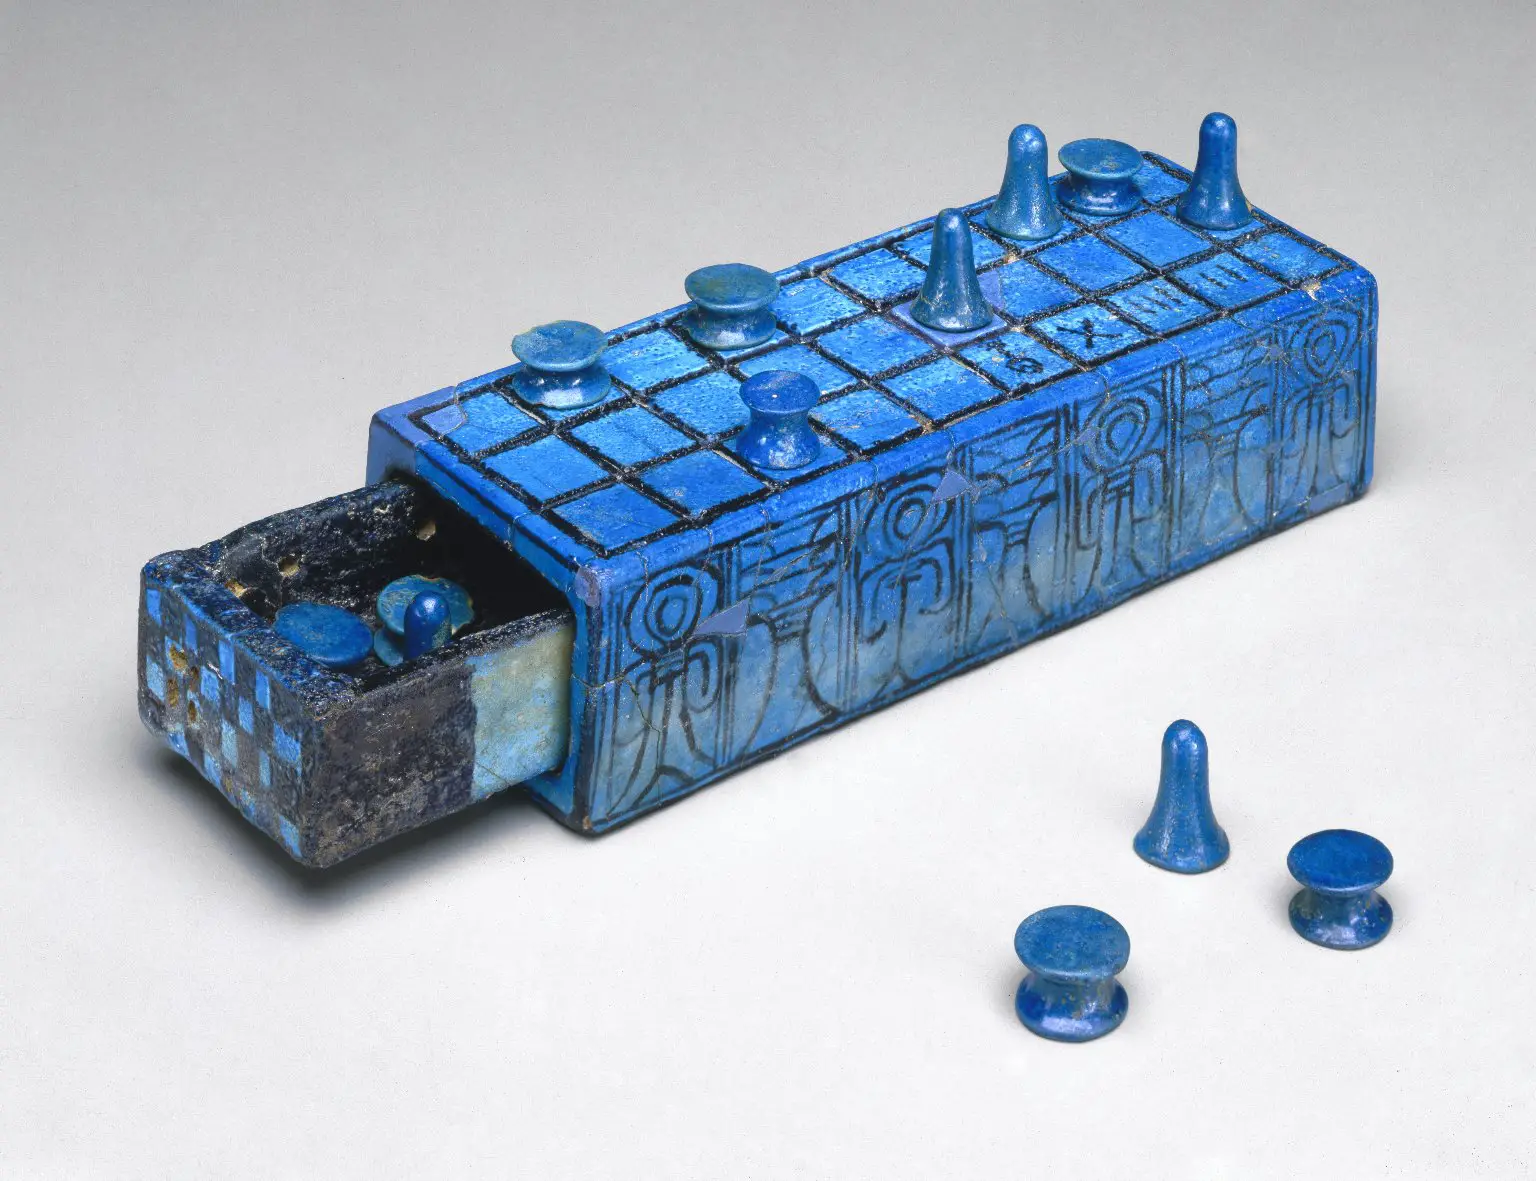 Senet: El secreto del juego favorito de los antiguos egipcios